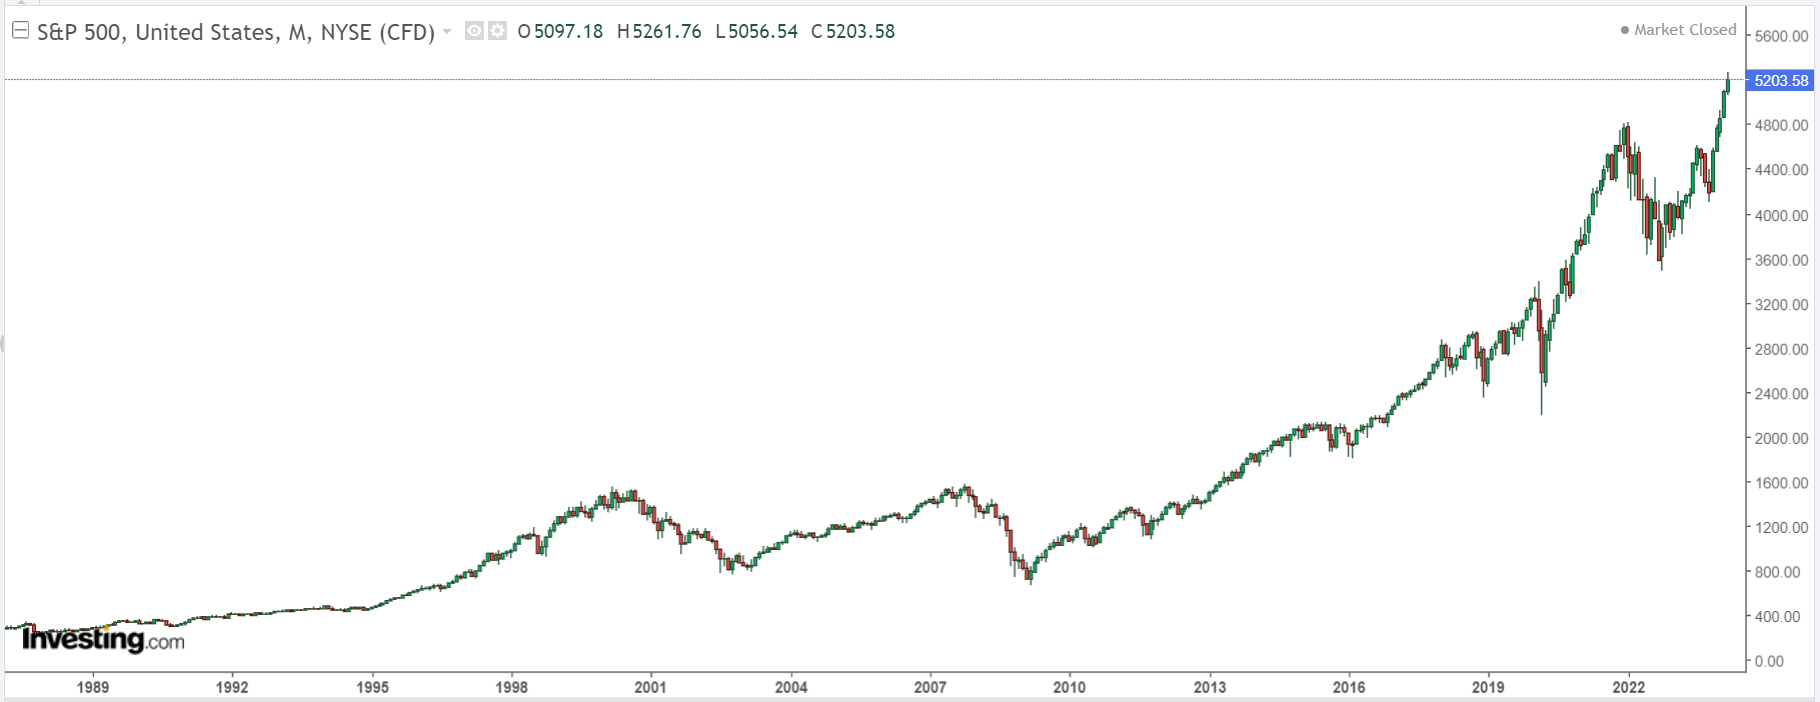 Месячный график S&P 500